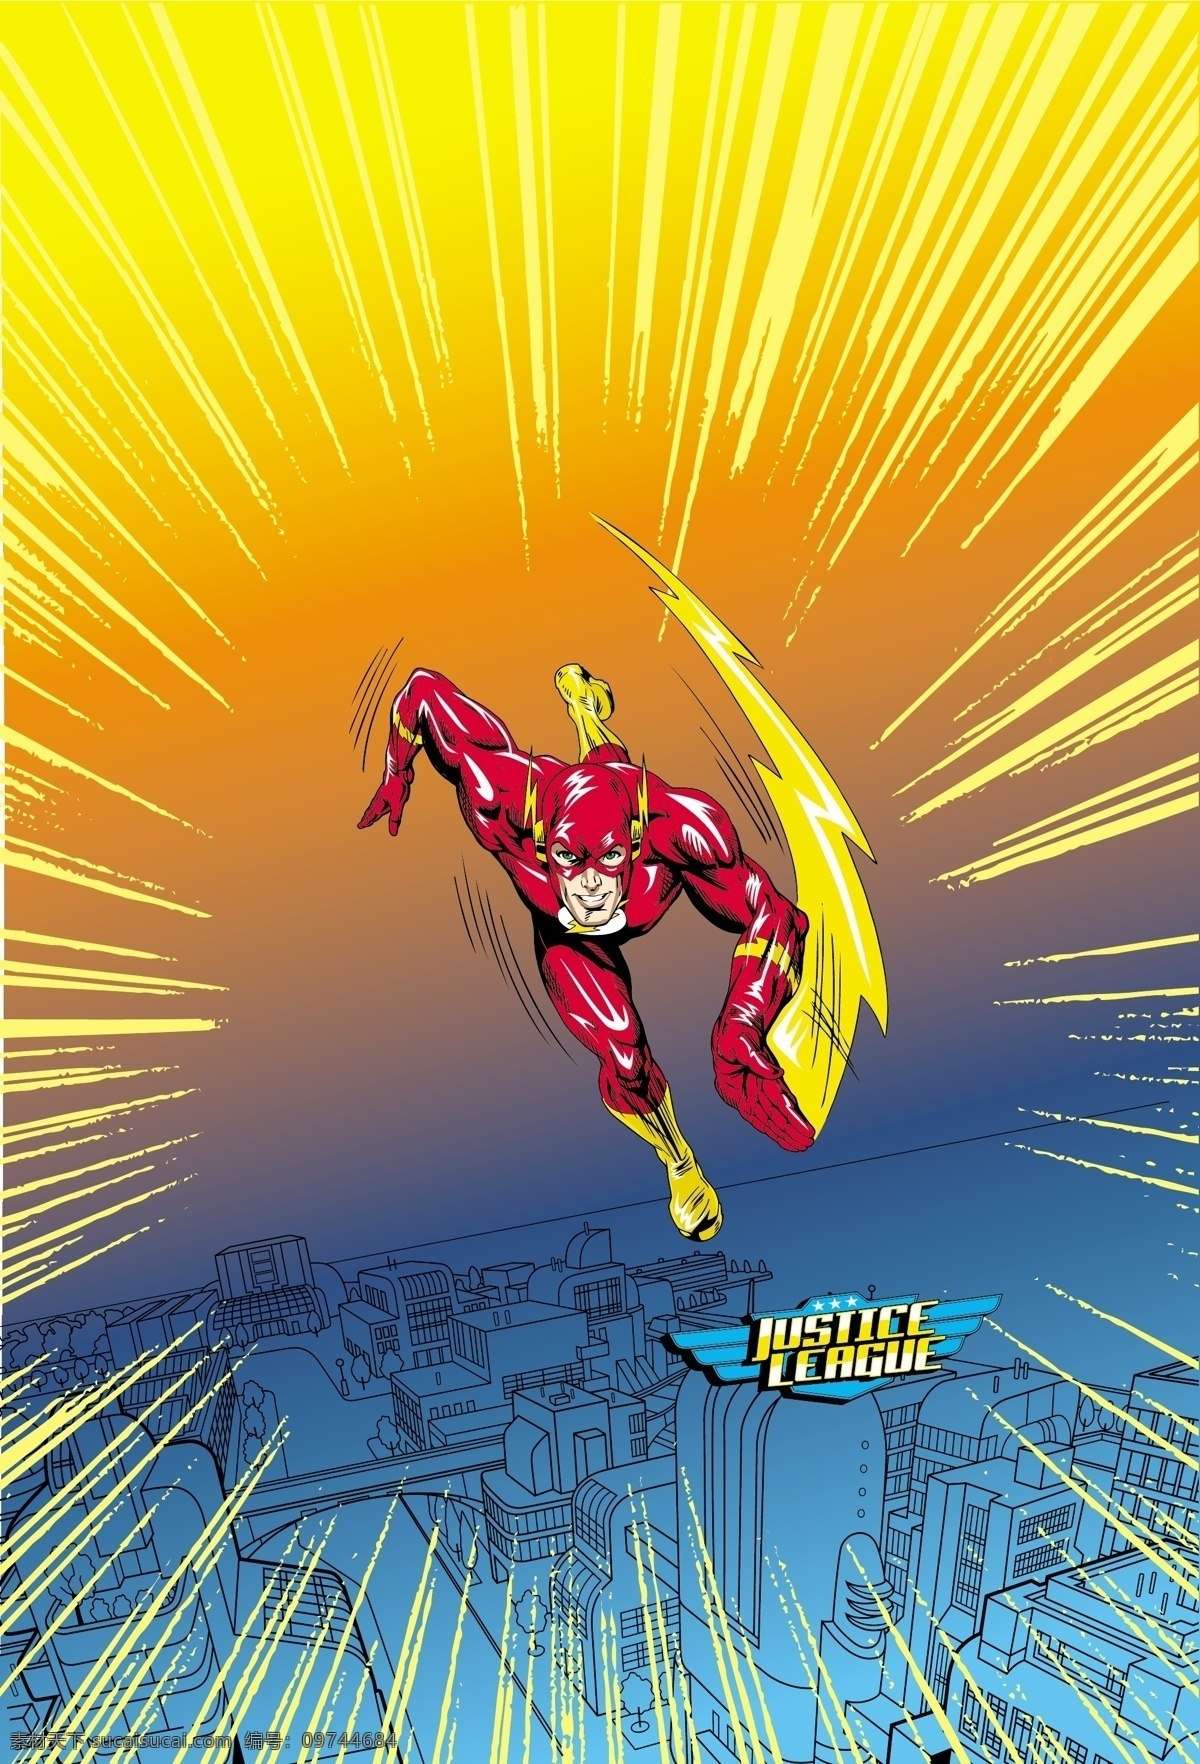 闪电侠 超人 superman 蝙蝠侠 batman flash 华纳 dc漫画 超级英雄 英雄联盟 卡通形象 其他人物 矢量人物 矢量 超人英雄